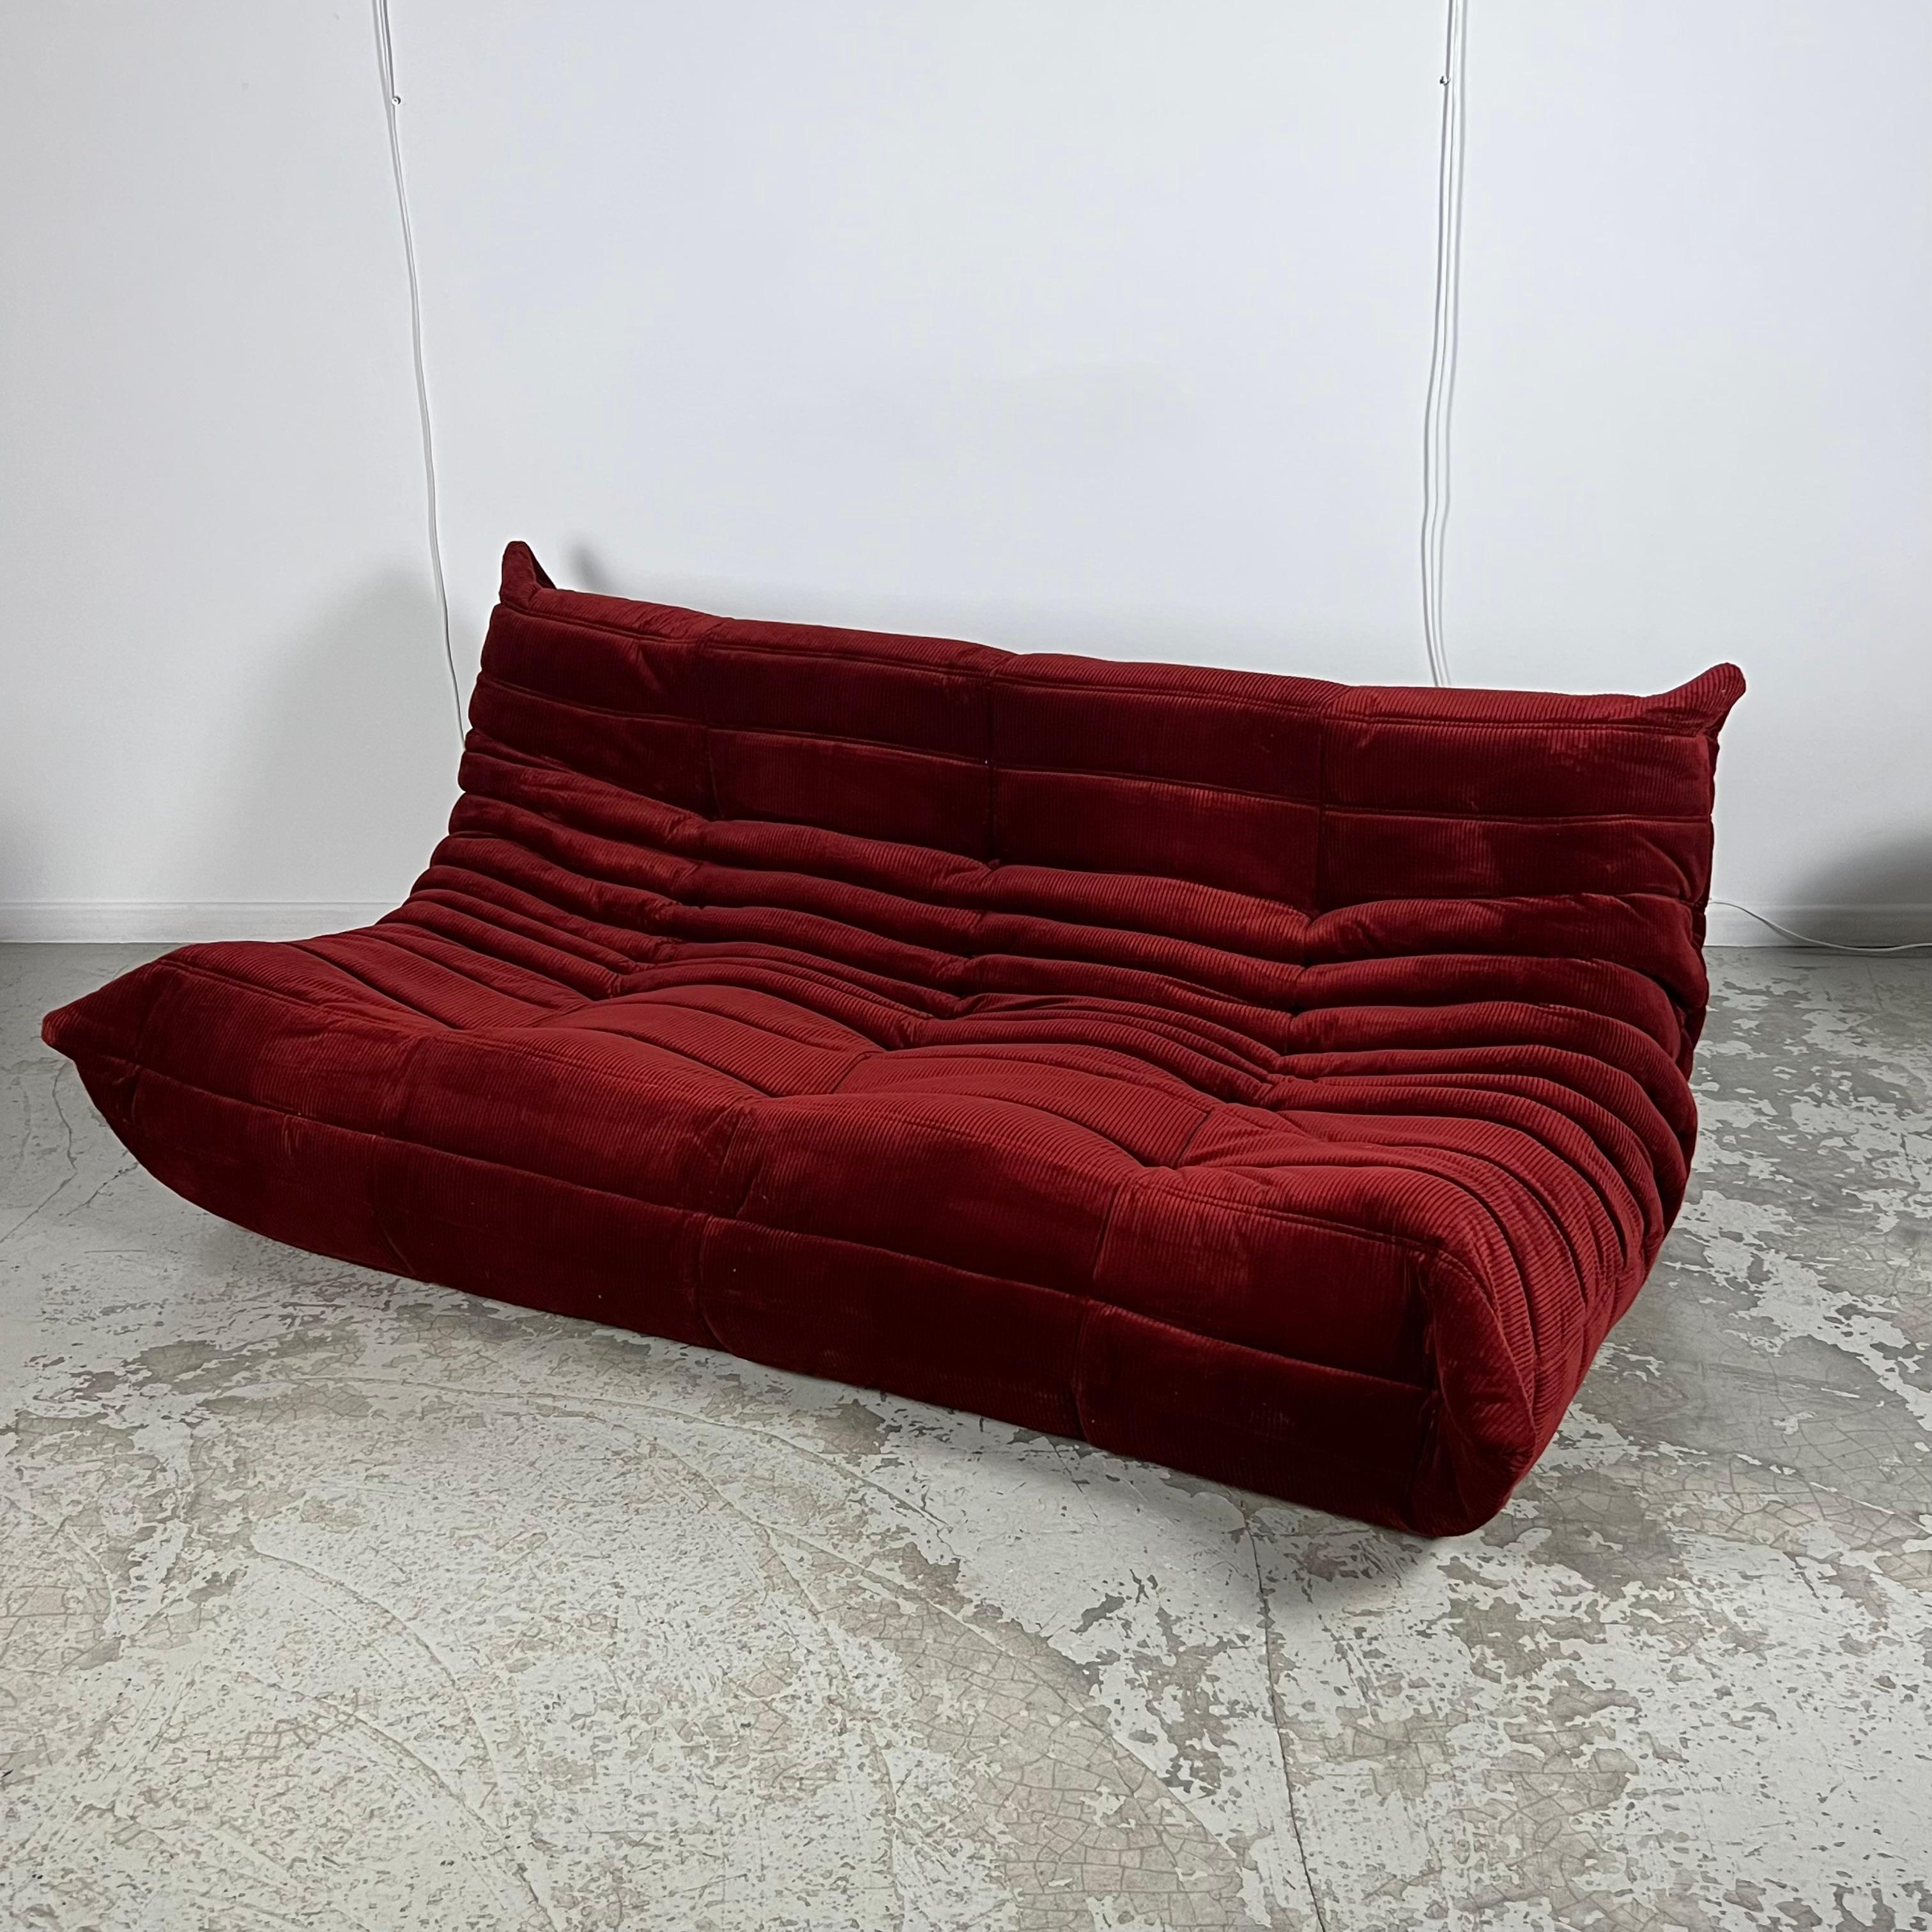 Dieses Sofa wurde in den 70er Jahren von Michel Ducaroy für Ligne Roset entworfen. Er hat 26 Jahre seines Lebens der Leitung der Designabteilung von Ligne Roset gewidmet. Im Jahr 1973 entwarf er seine berühmteste Kreation: das Sofa Togo. 
Ihm